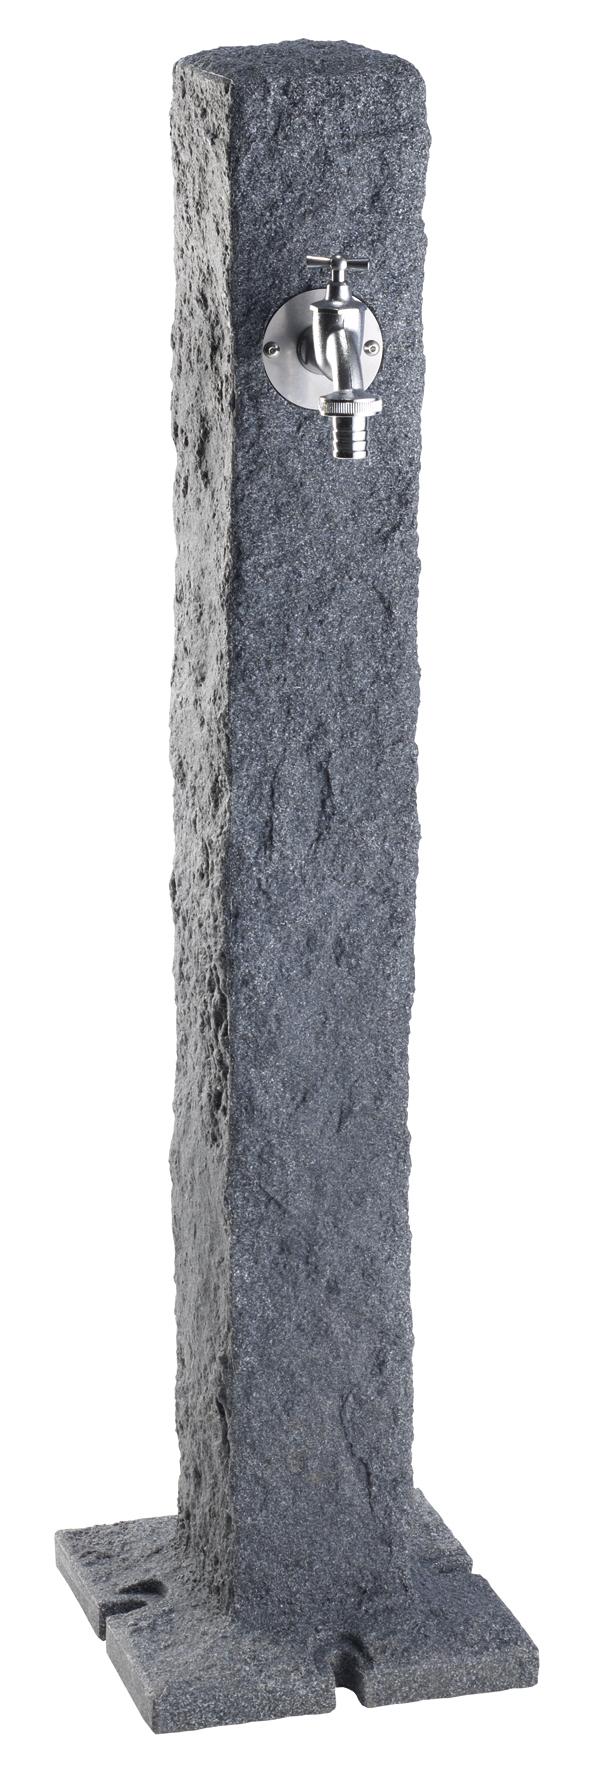 Garantia Wasserzapfsäule "Granit" - darkgranite